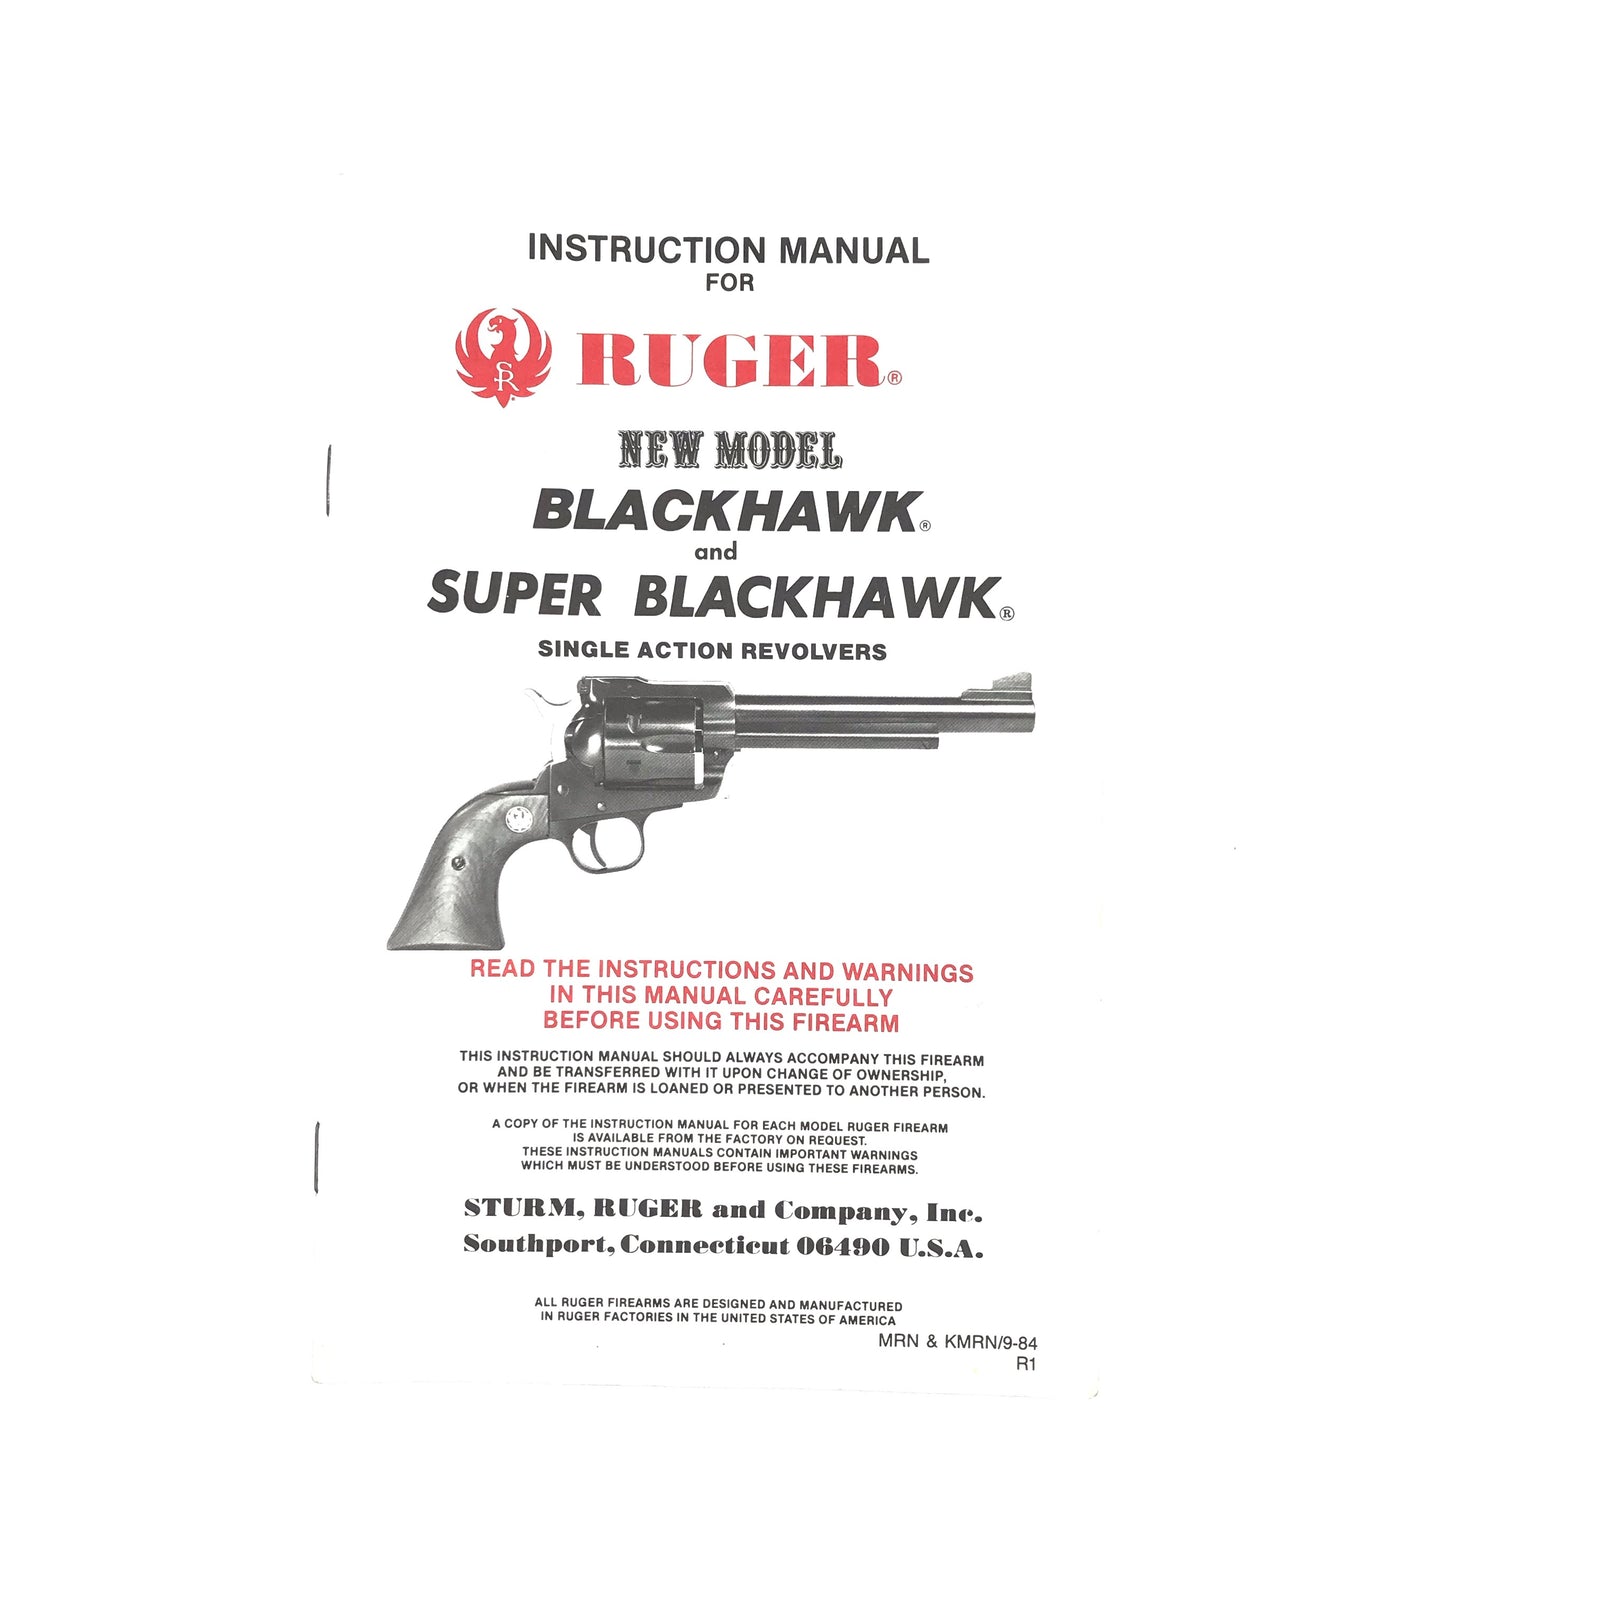 Instruction Manual for Ruger New Model Blackhawk & Super Blackhawk